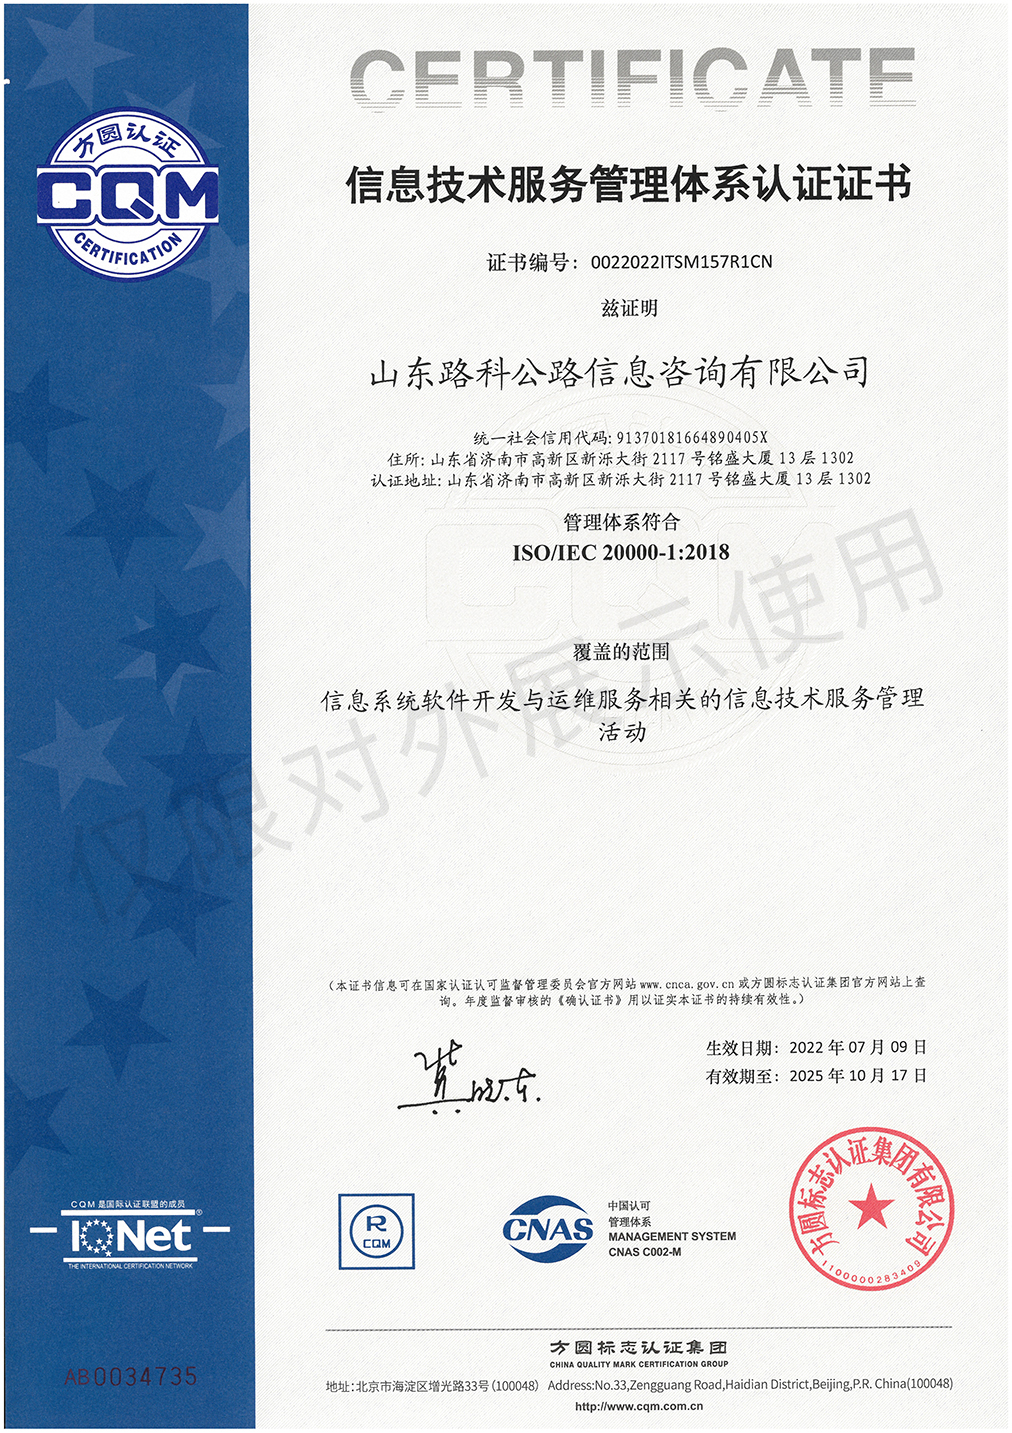 20000信息技术服务管理体系认证证书2025.10.17.jpg